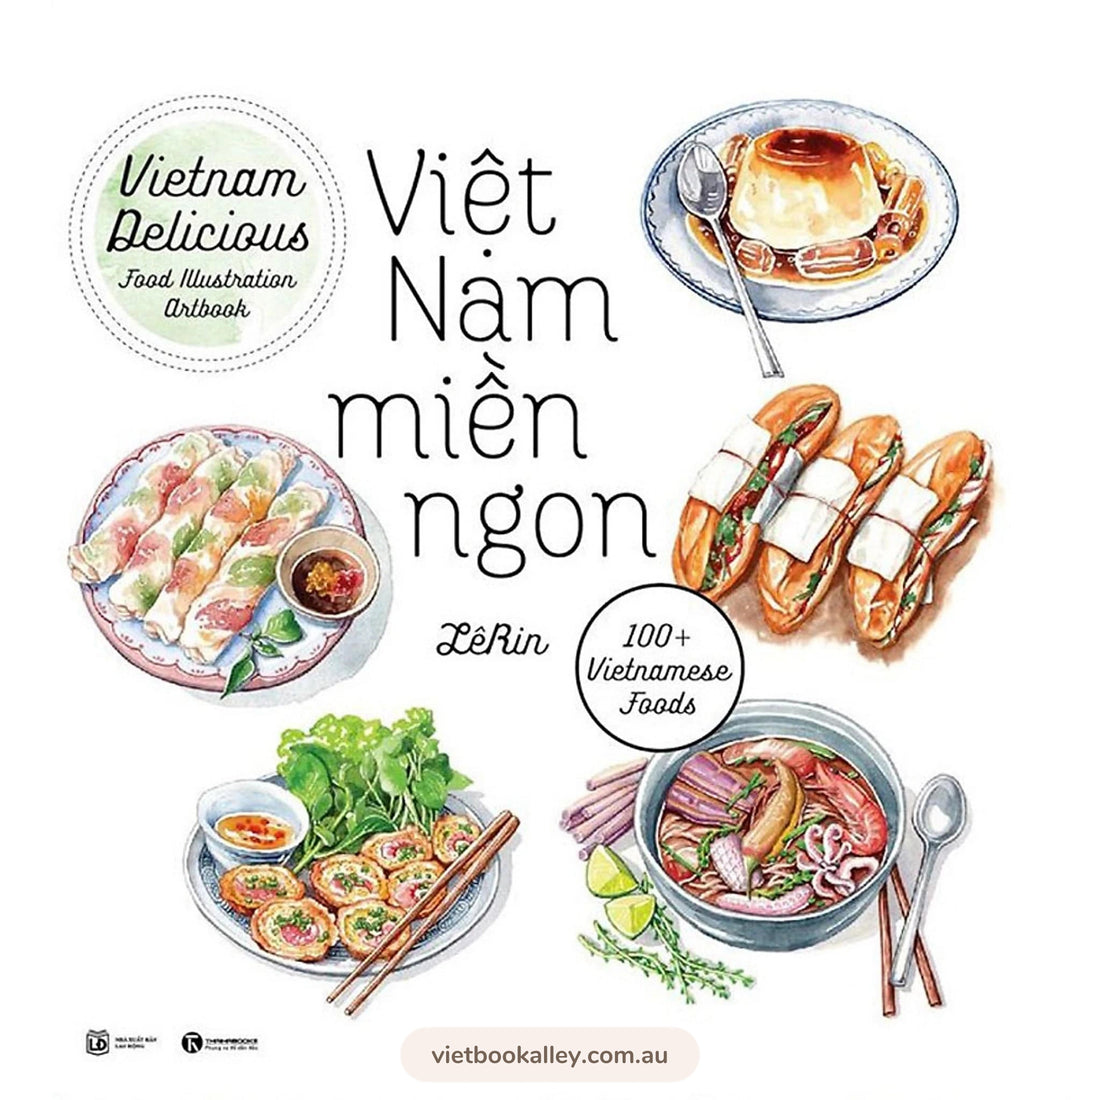 Sách ẩm thực Việt Nam cung cấp cho bạn nhiều thông tin, hướng dẫn về cách chế biến và cả lịch sử của món ăn Việt Nam. Những hình ảnh đẹp mắt kèm theo sẽ giúp bạn thấy được sự hấp dẫn của ẩm thực Việt Nam và cảm thấy tò mò muốn khám phá hơn.